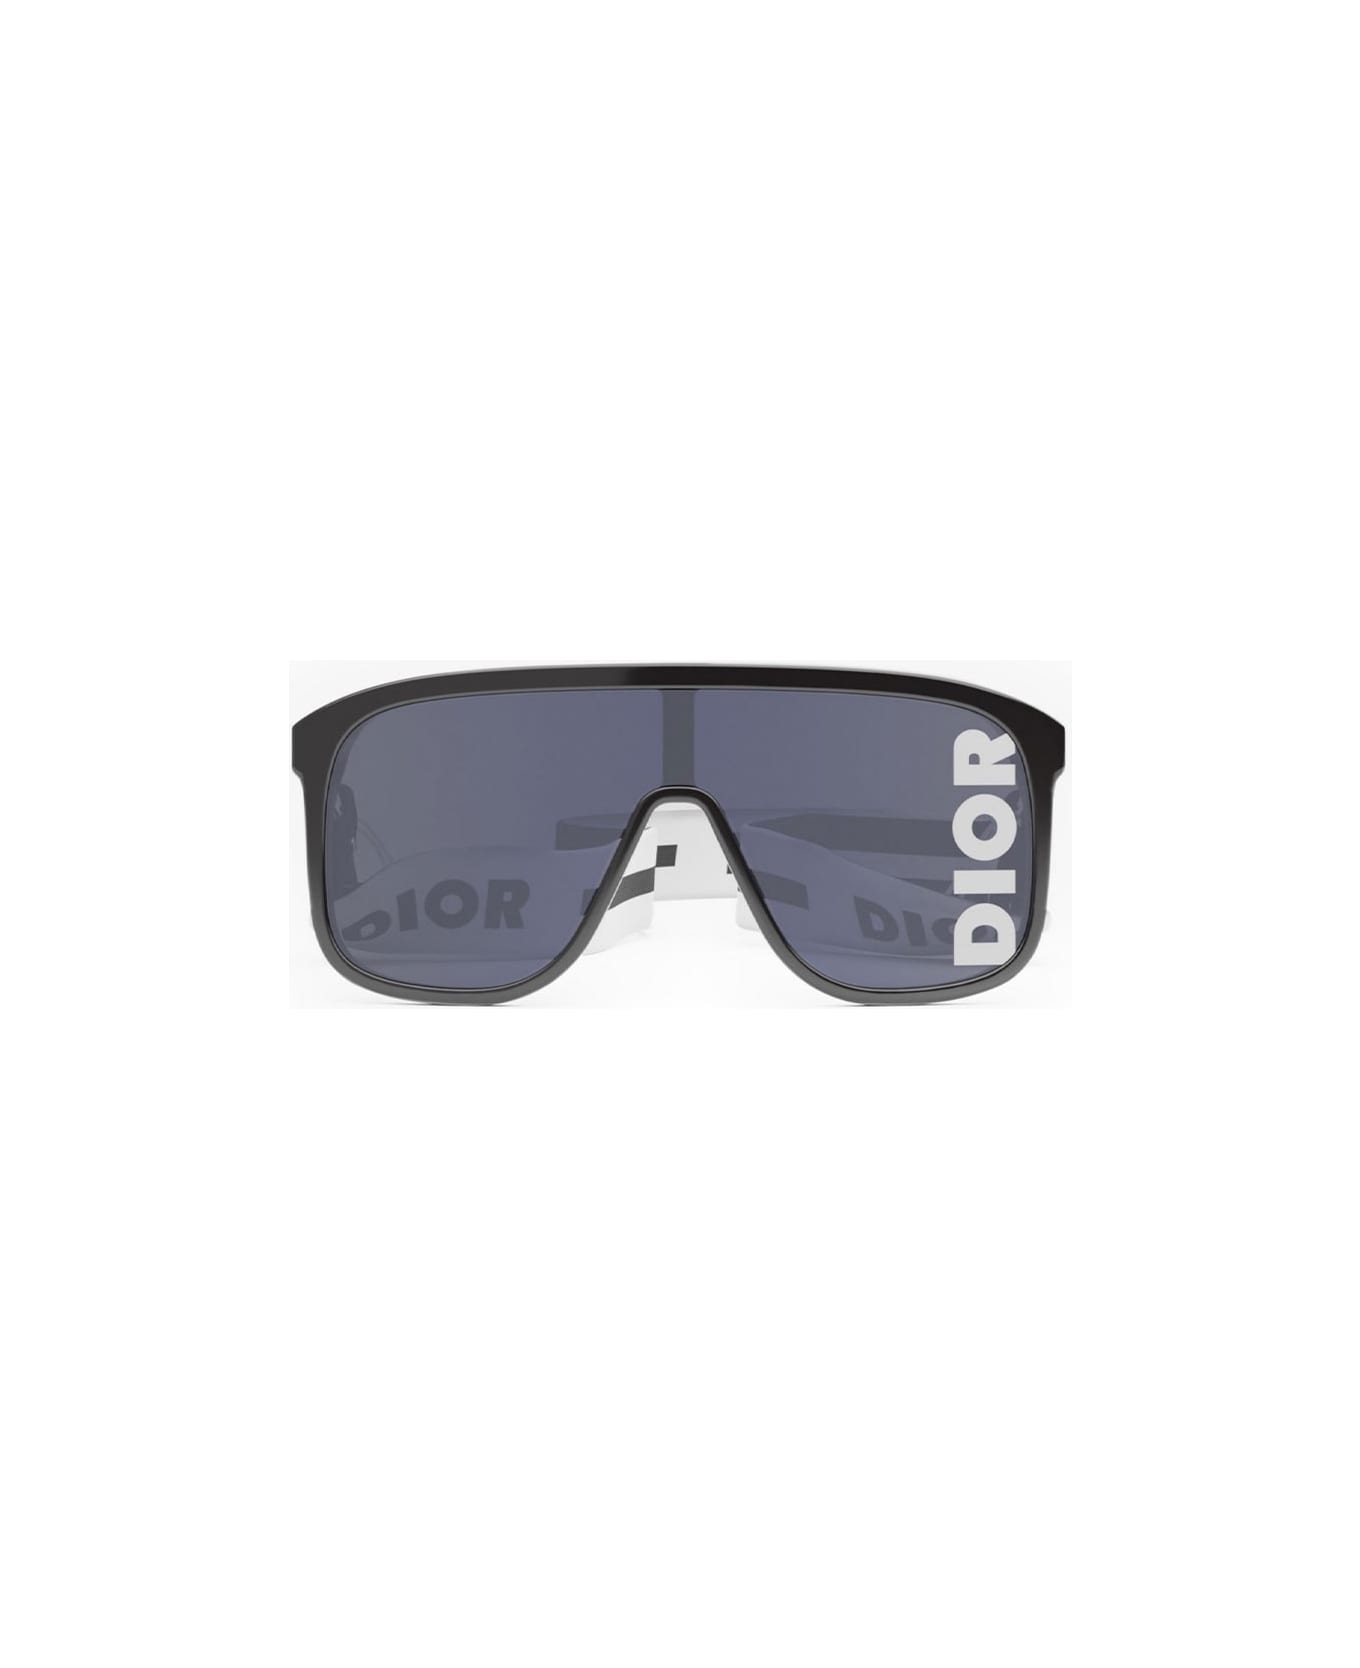 Dior Eyewear Sunglasses - Nero/Grigio specchiato